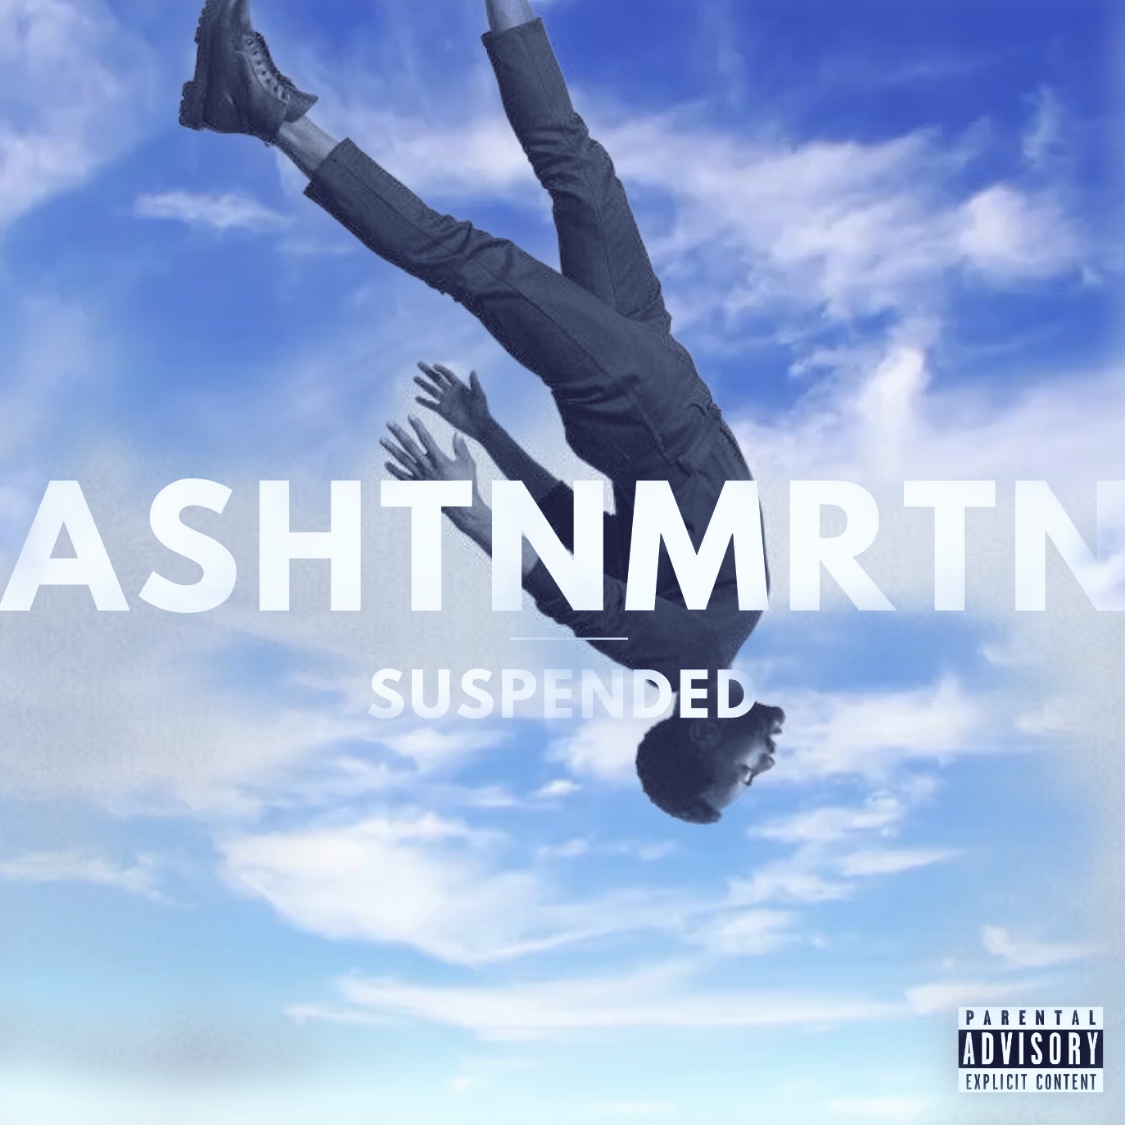 AshtnMrtn Suspended